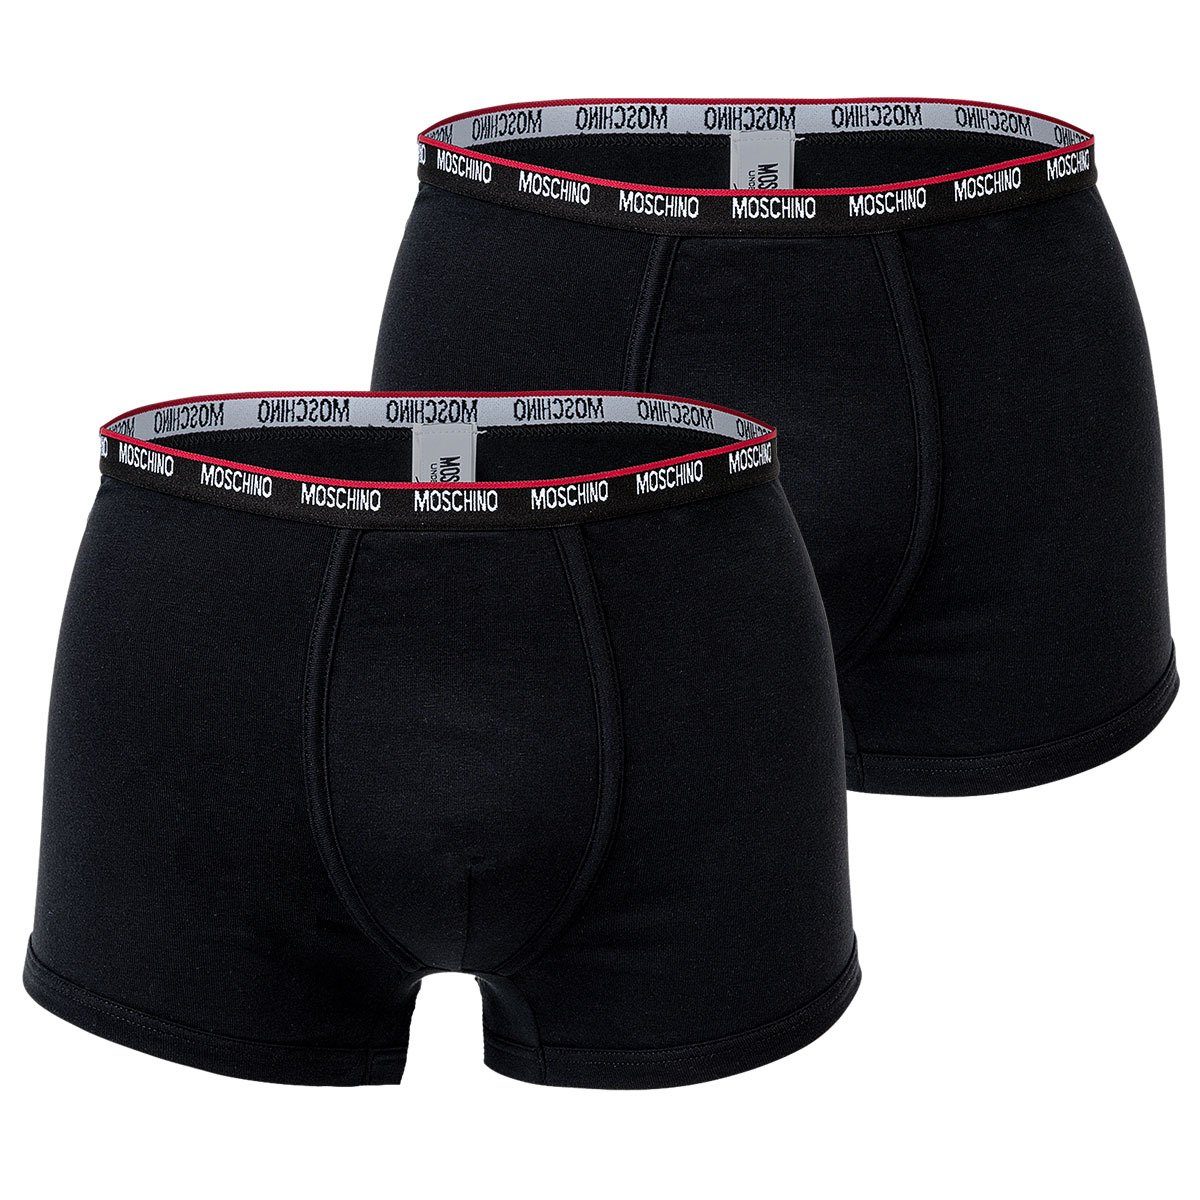 Pack Boxer Moschino Cotton Trunks, Shorts Schwarz - Herren 2er Unterhose,